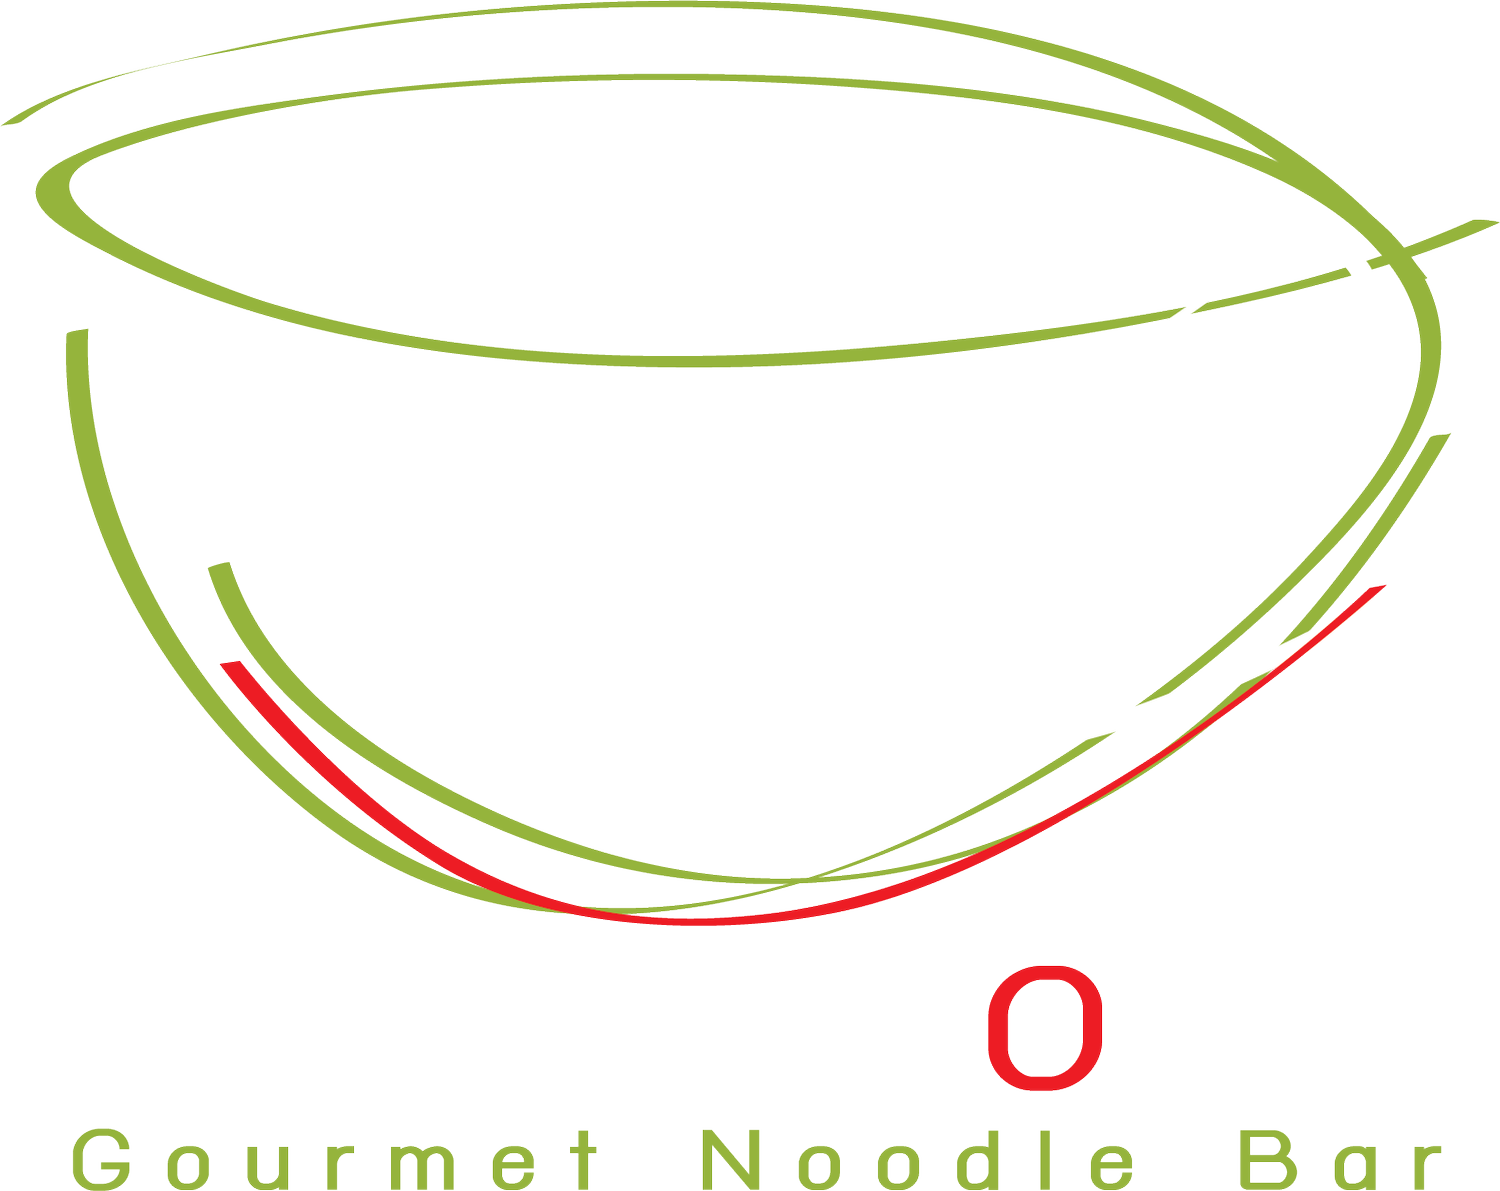 Empty Bowl Gourmet Noodle Bar